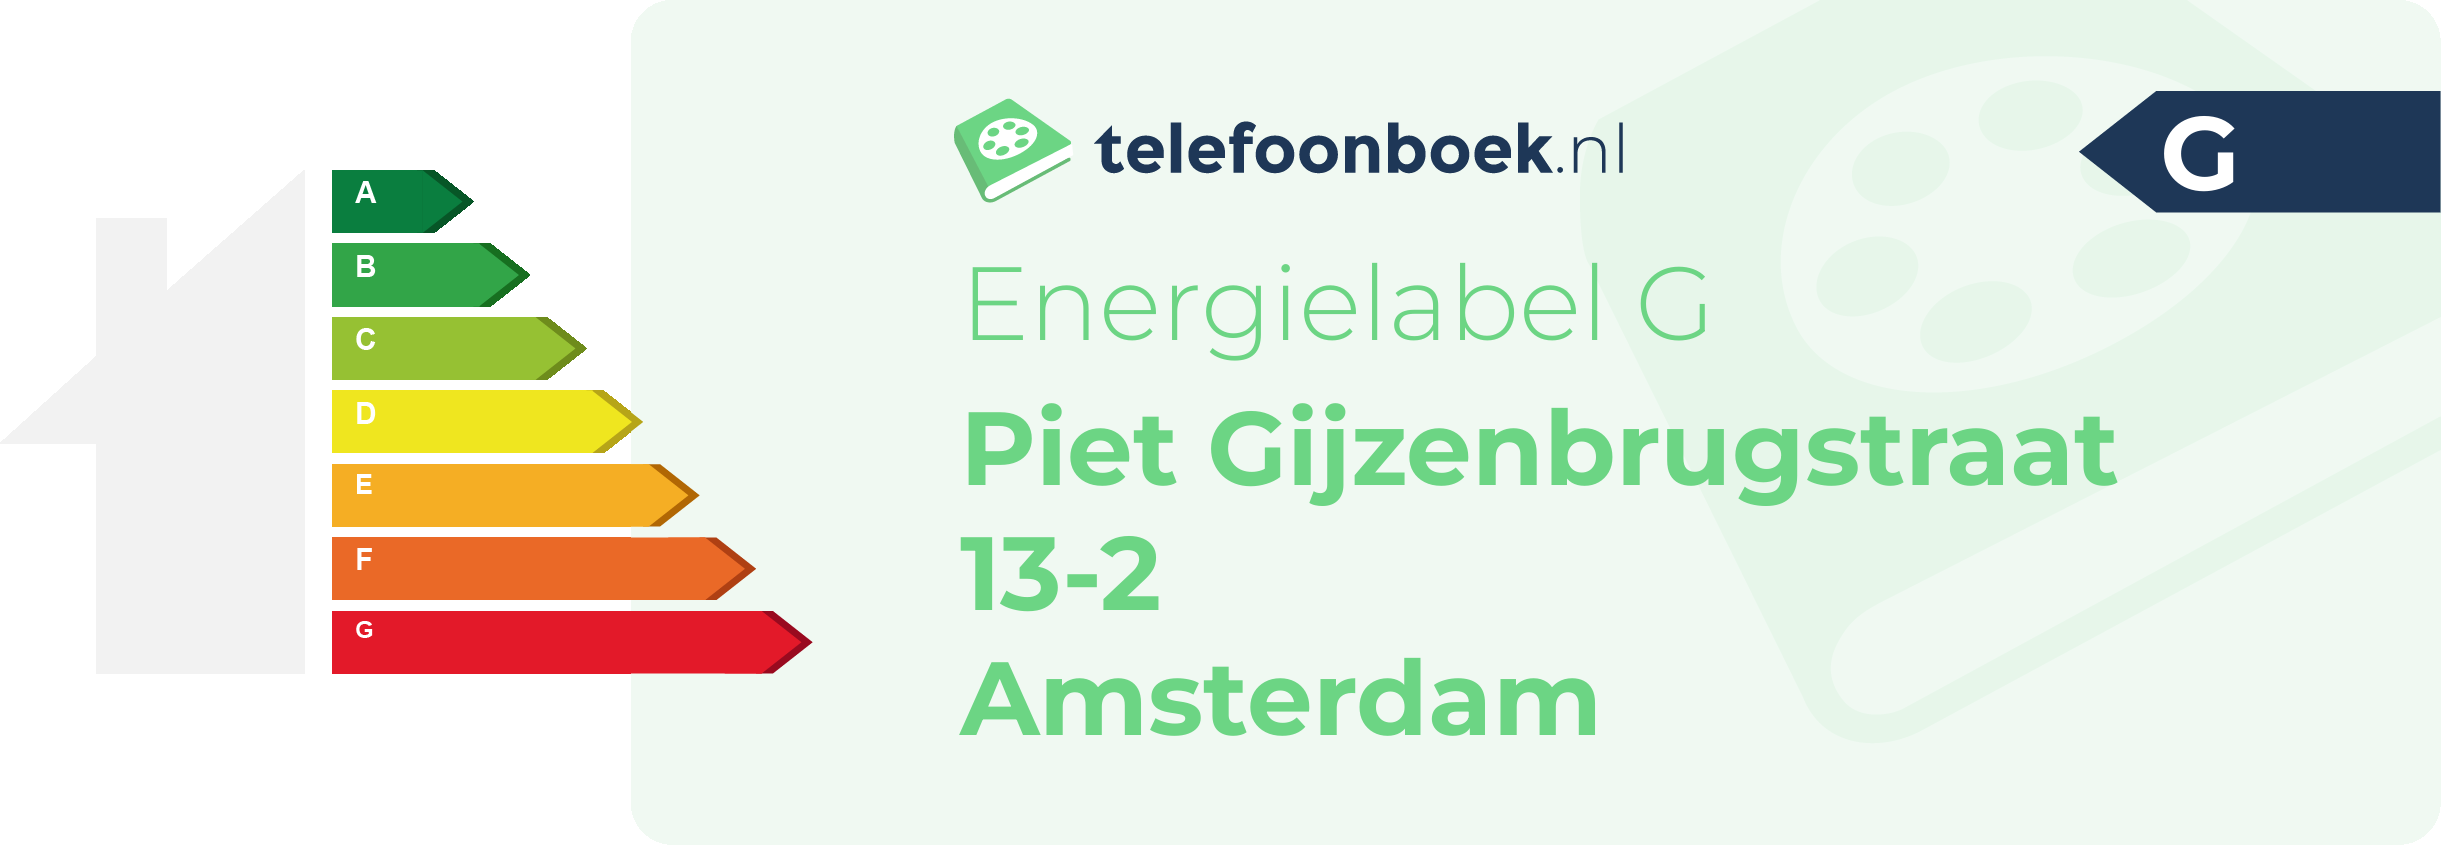 Energielabel Piet Gijzenbrugstraat 13-2 Amsterdam